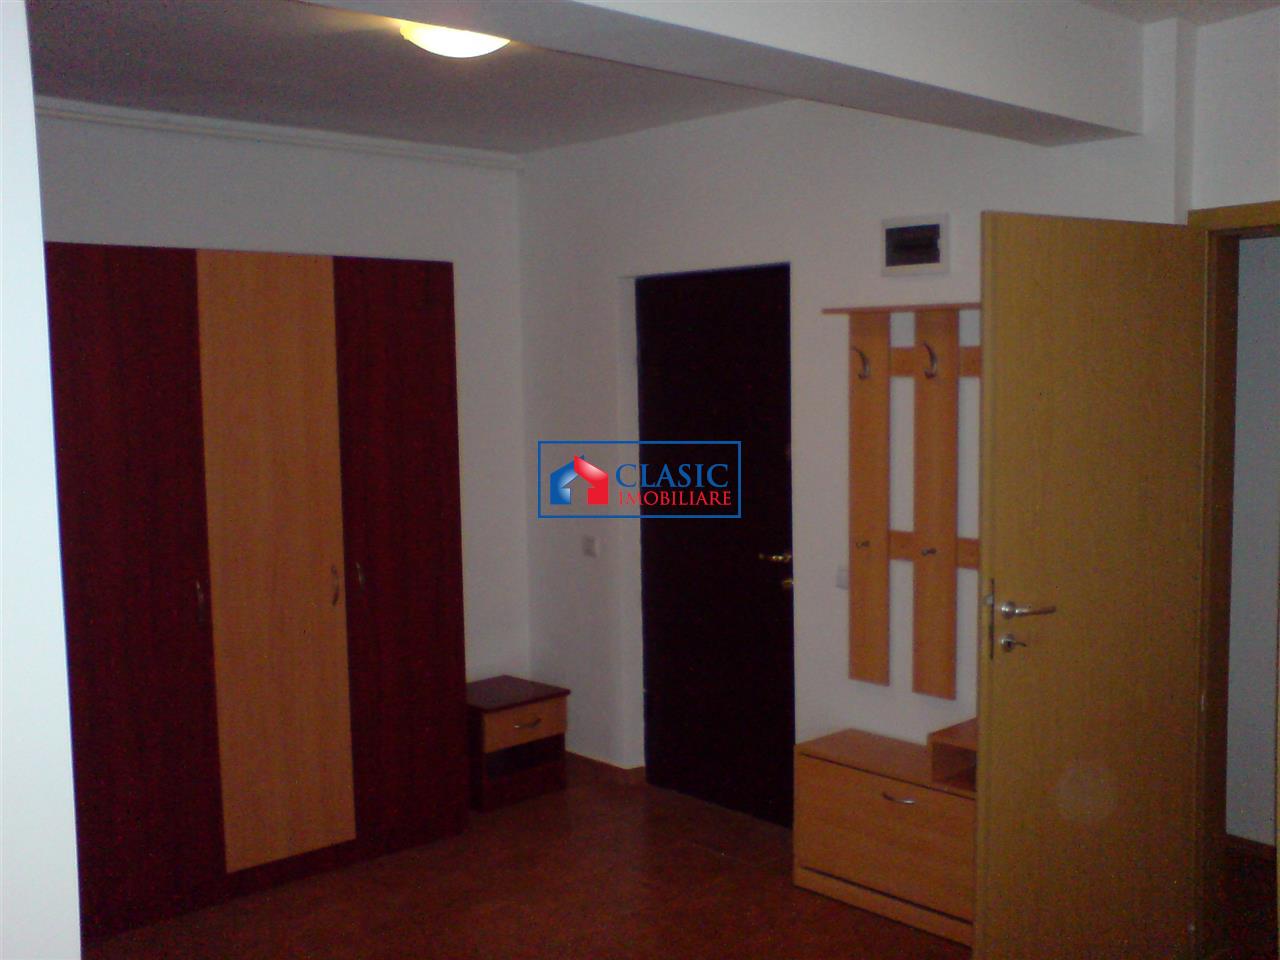 Inchiriere apartament 2 camere modern in Buna Ziua